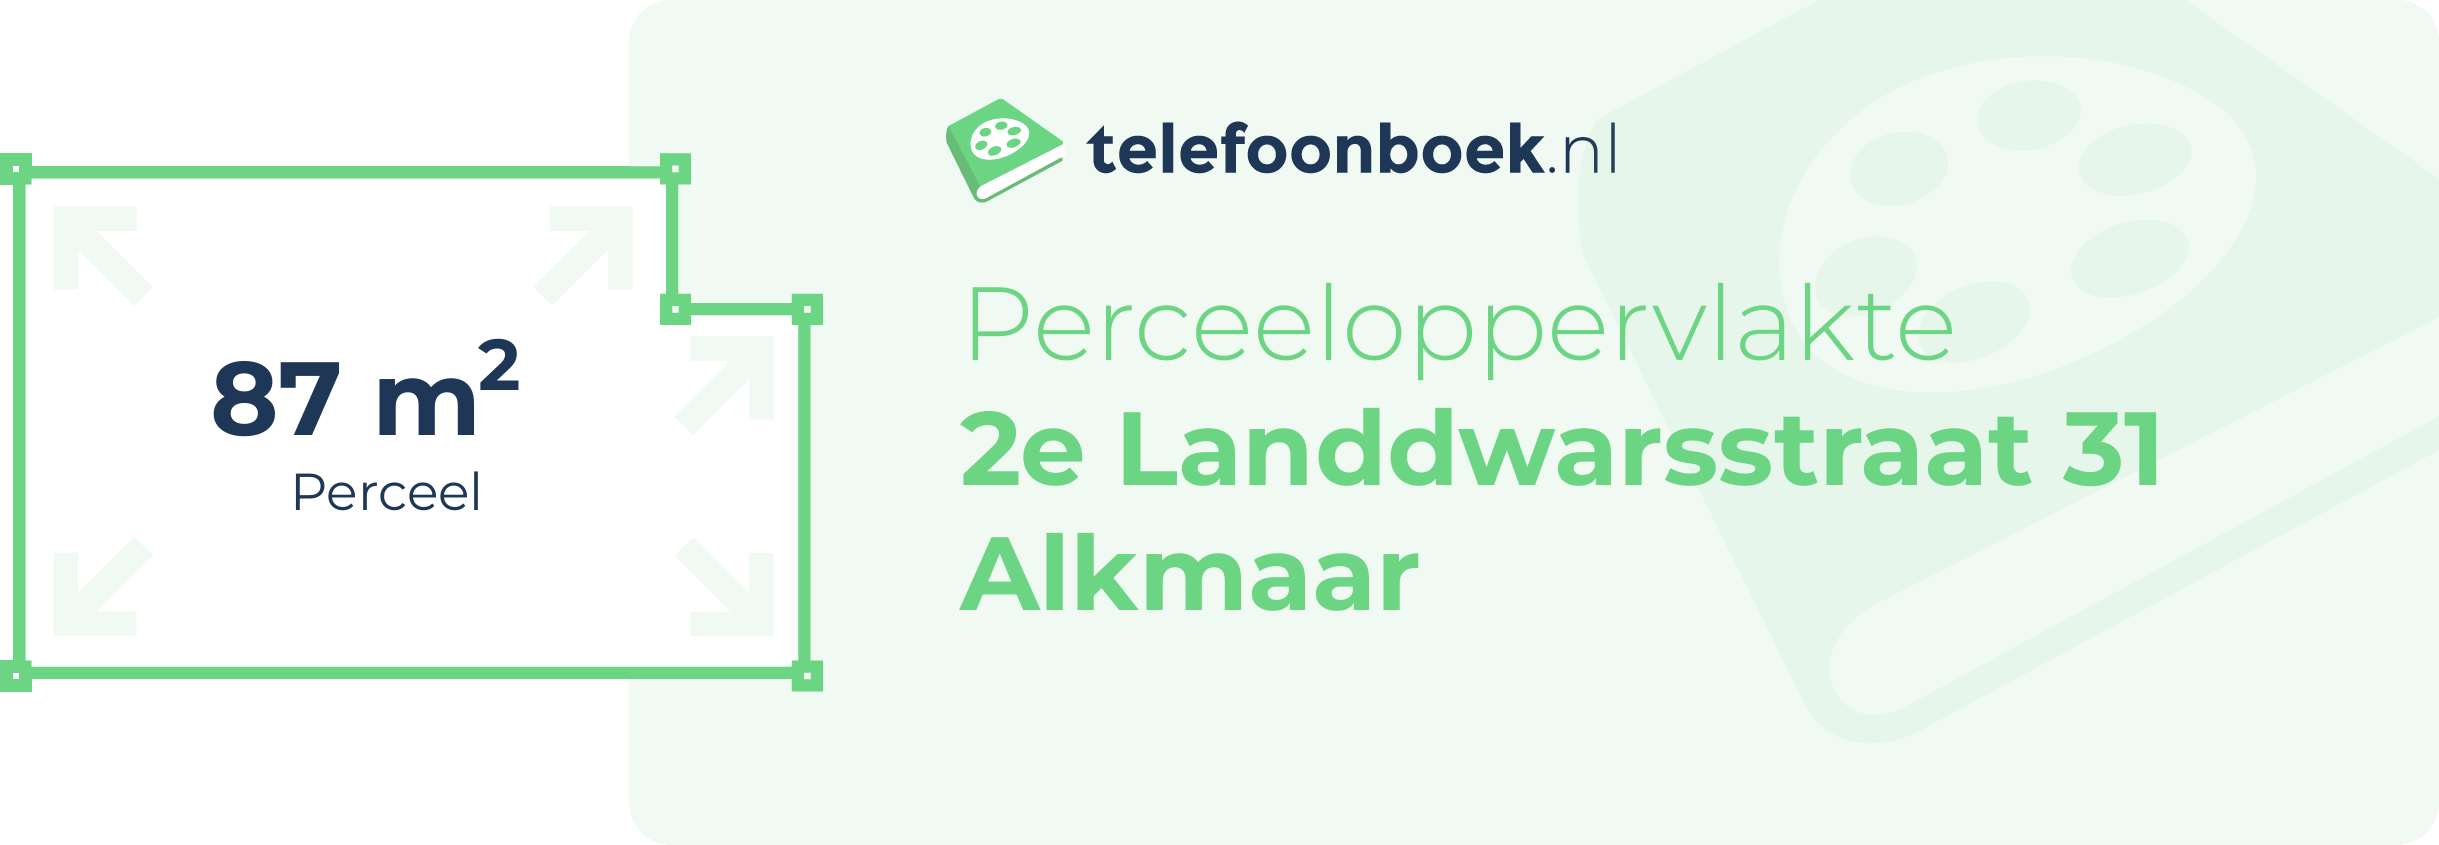 Perceeloppervlakte 2e Landdwarsstraat 31 Alkmaar